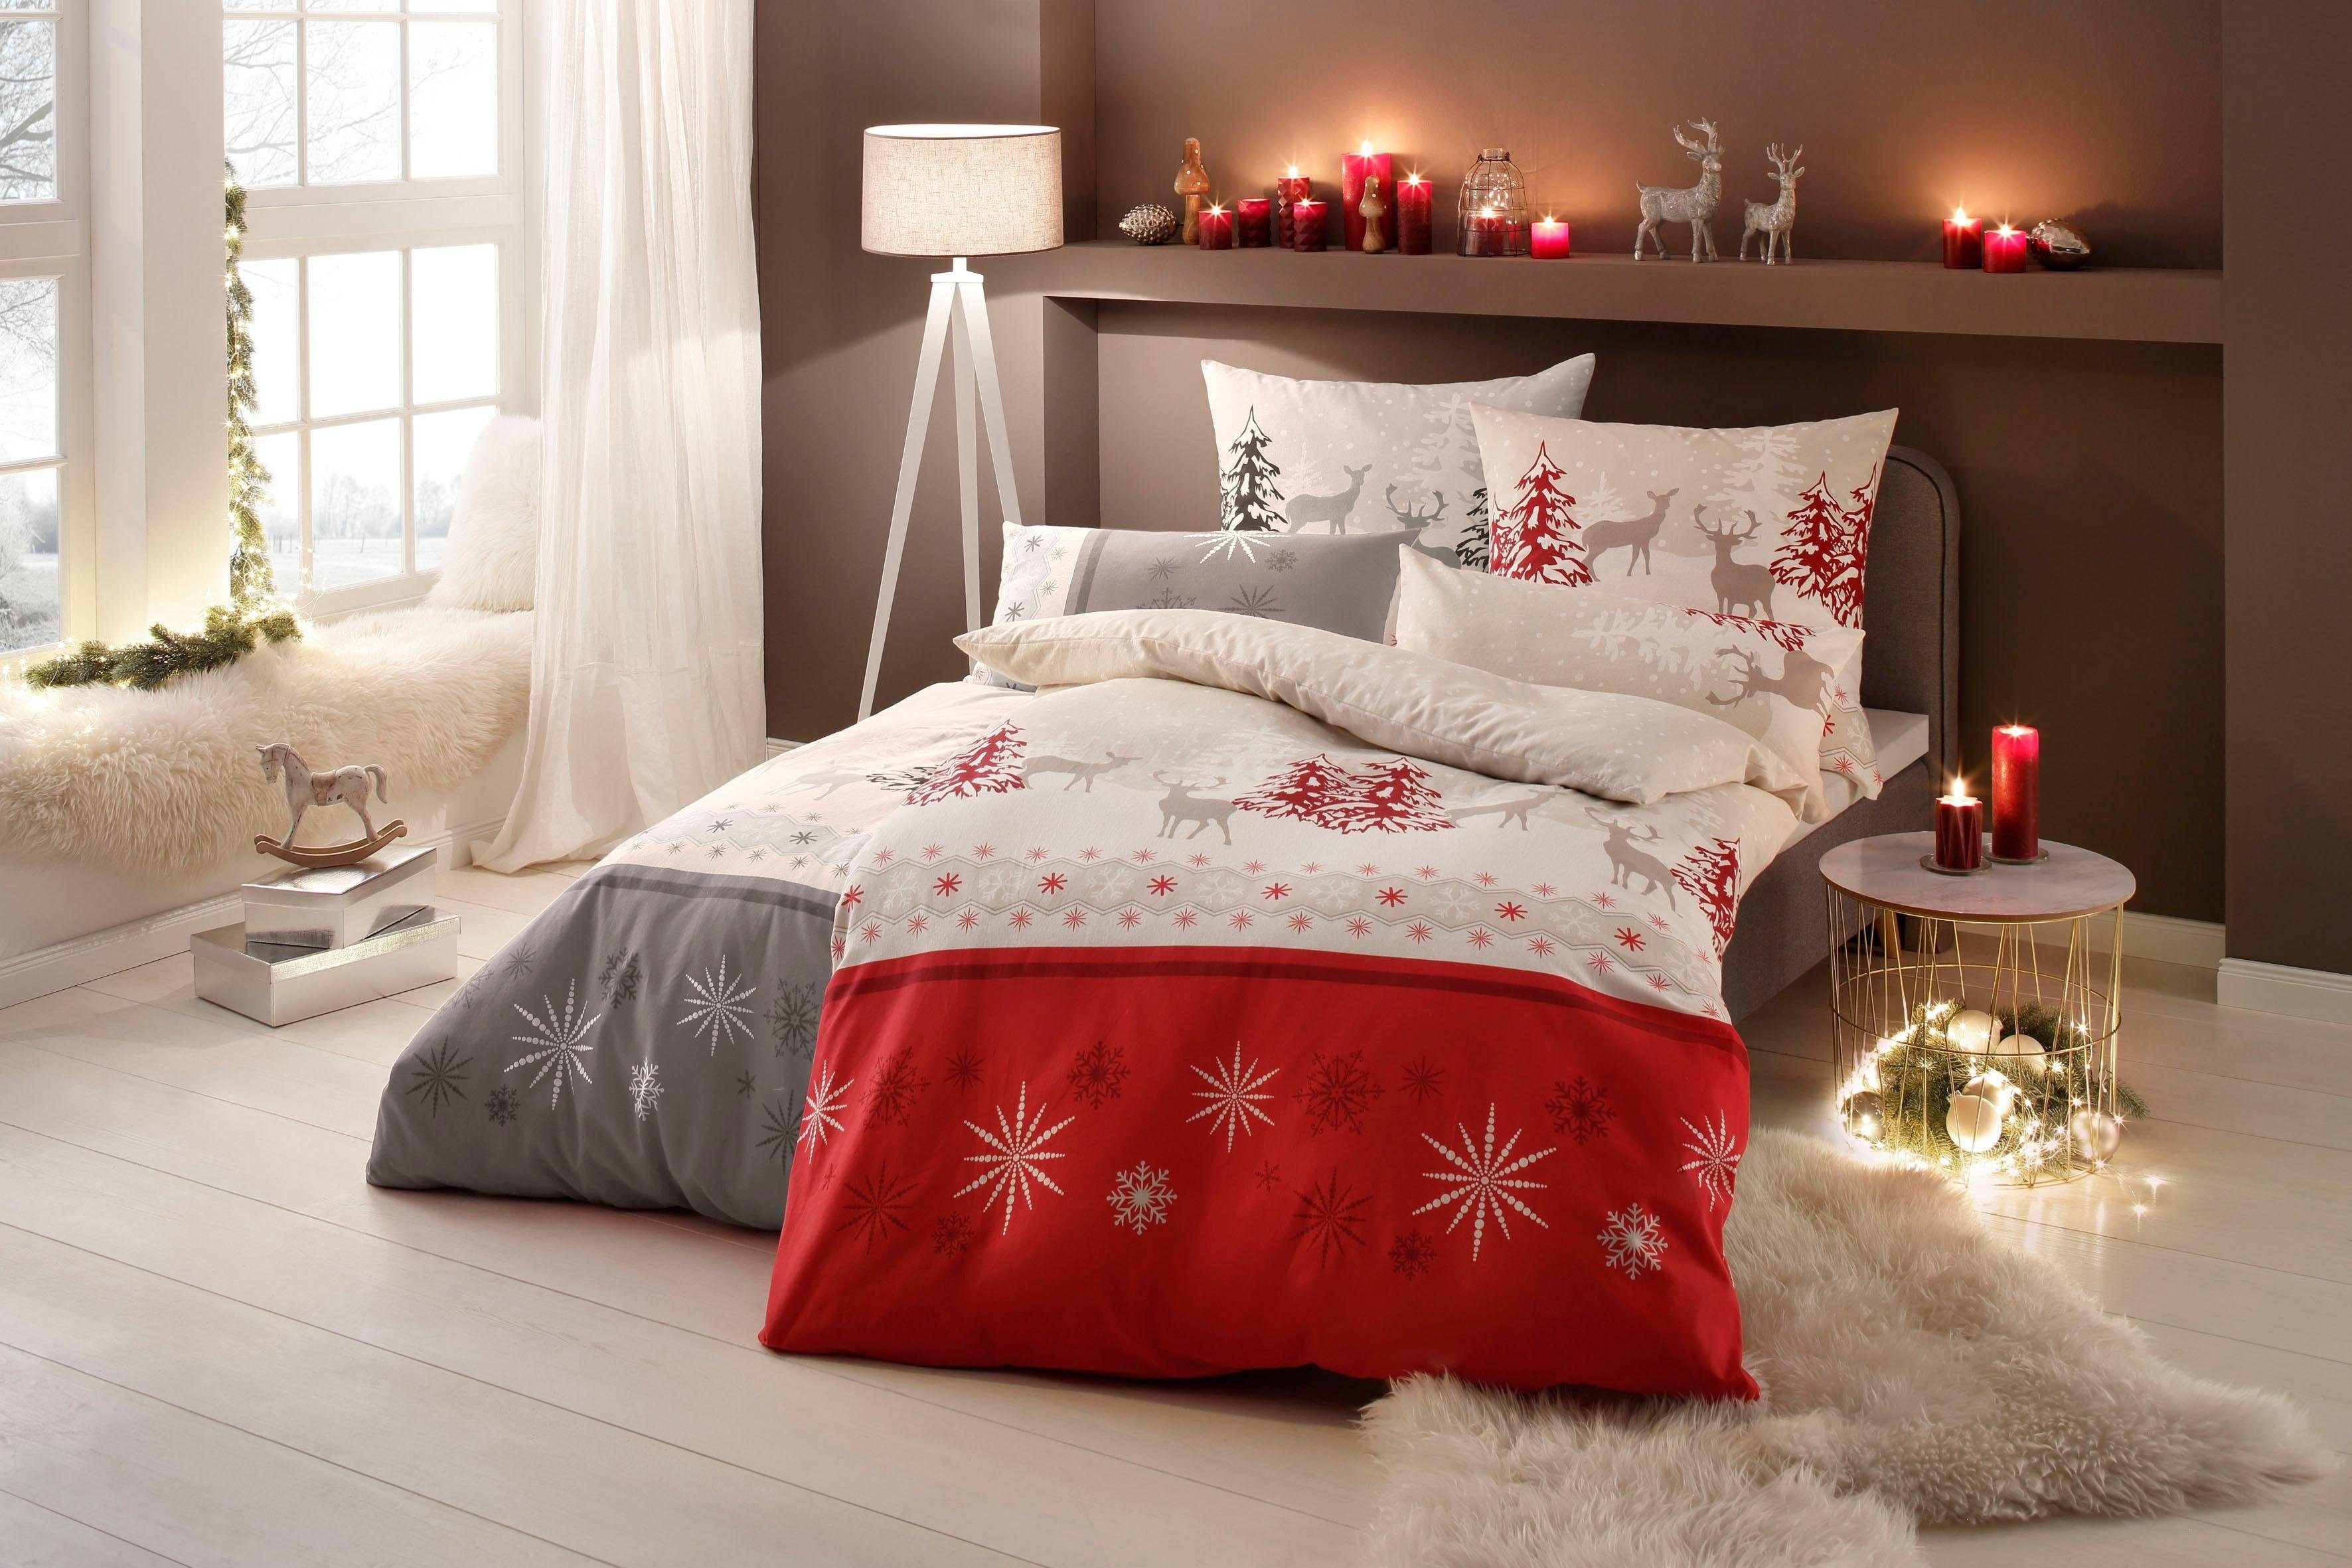 Bettwäsche Venua in Gr. Linon, rot/beige my Weihnachtsbettwäsche cm, oder home, 135x200 155x220 Winterbettwäsche, teilig, 2